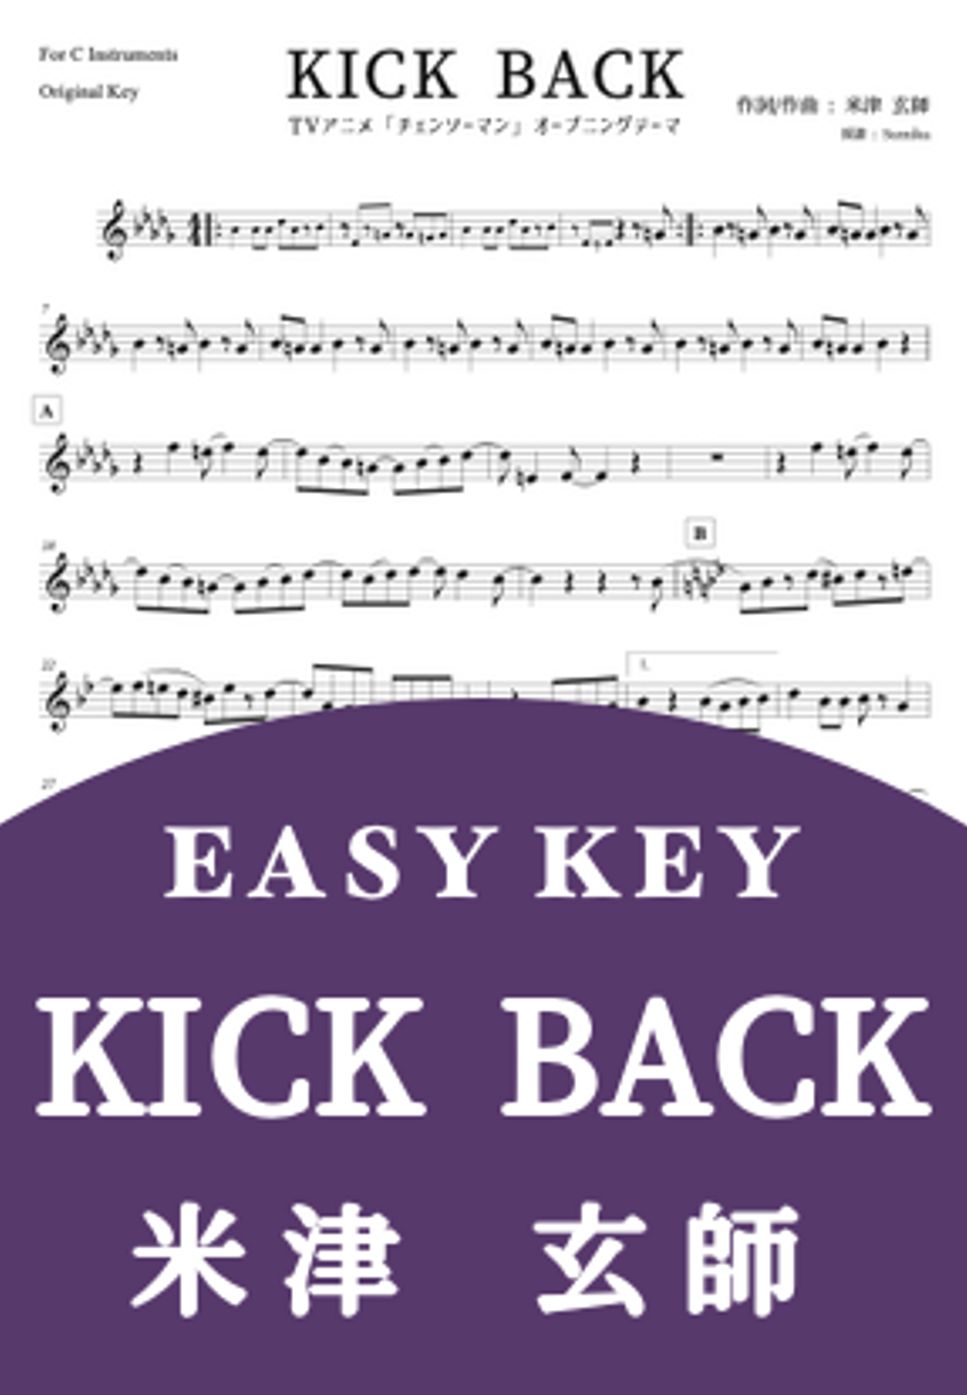 米津玄師 - KICK BACK (初級者向け Easy key) by Sumika